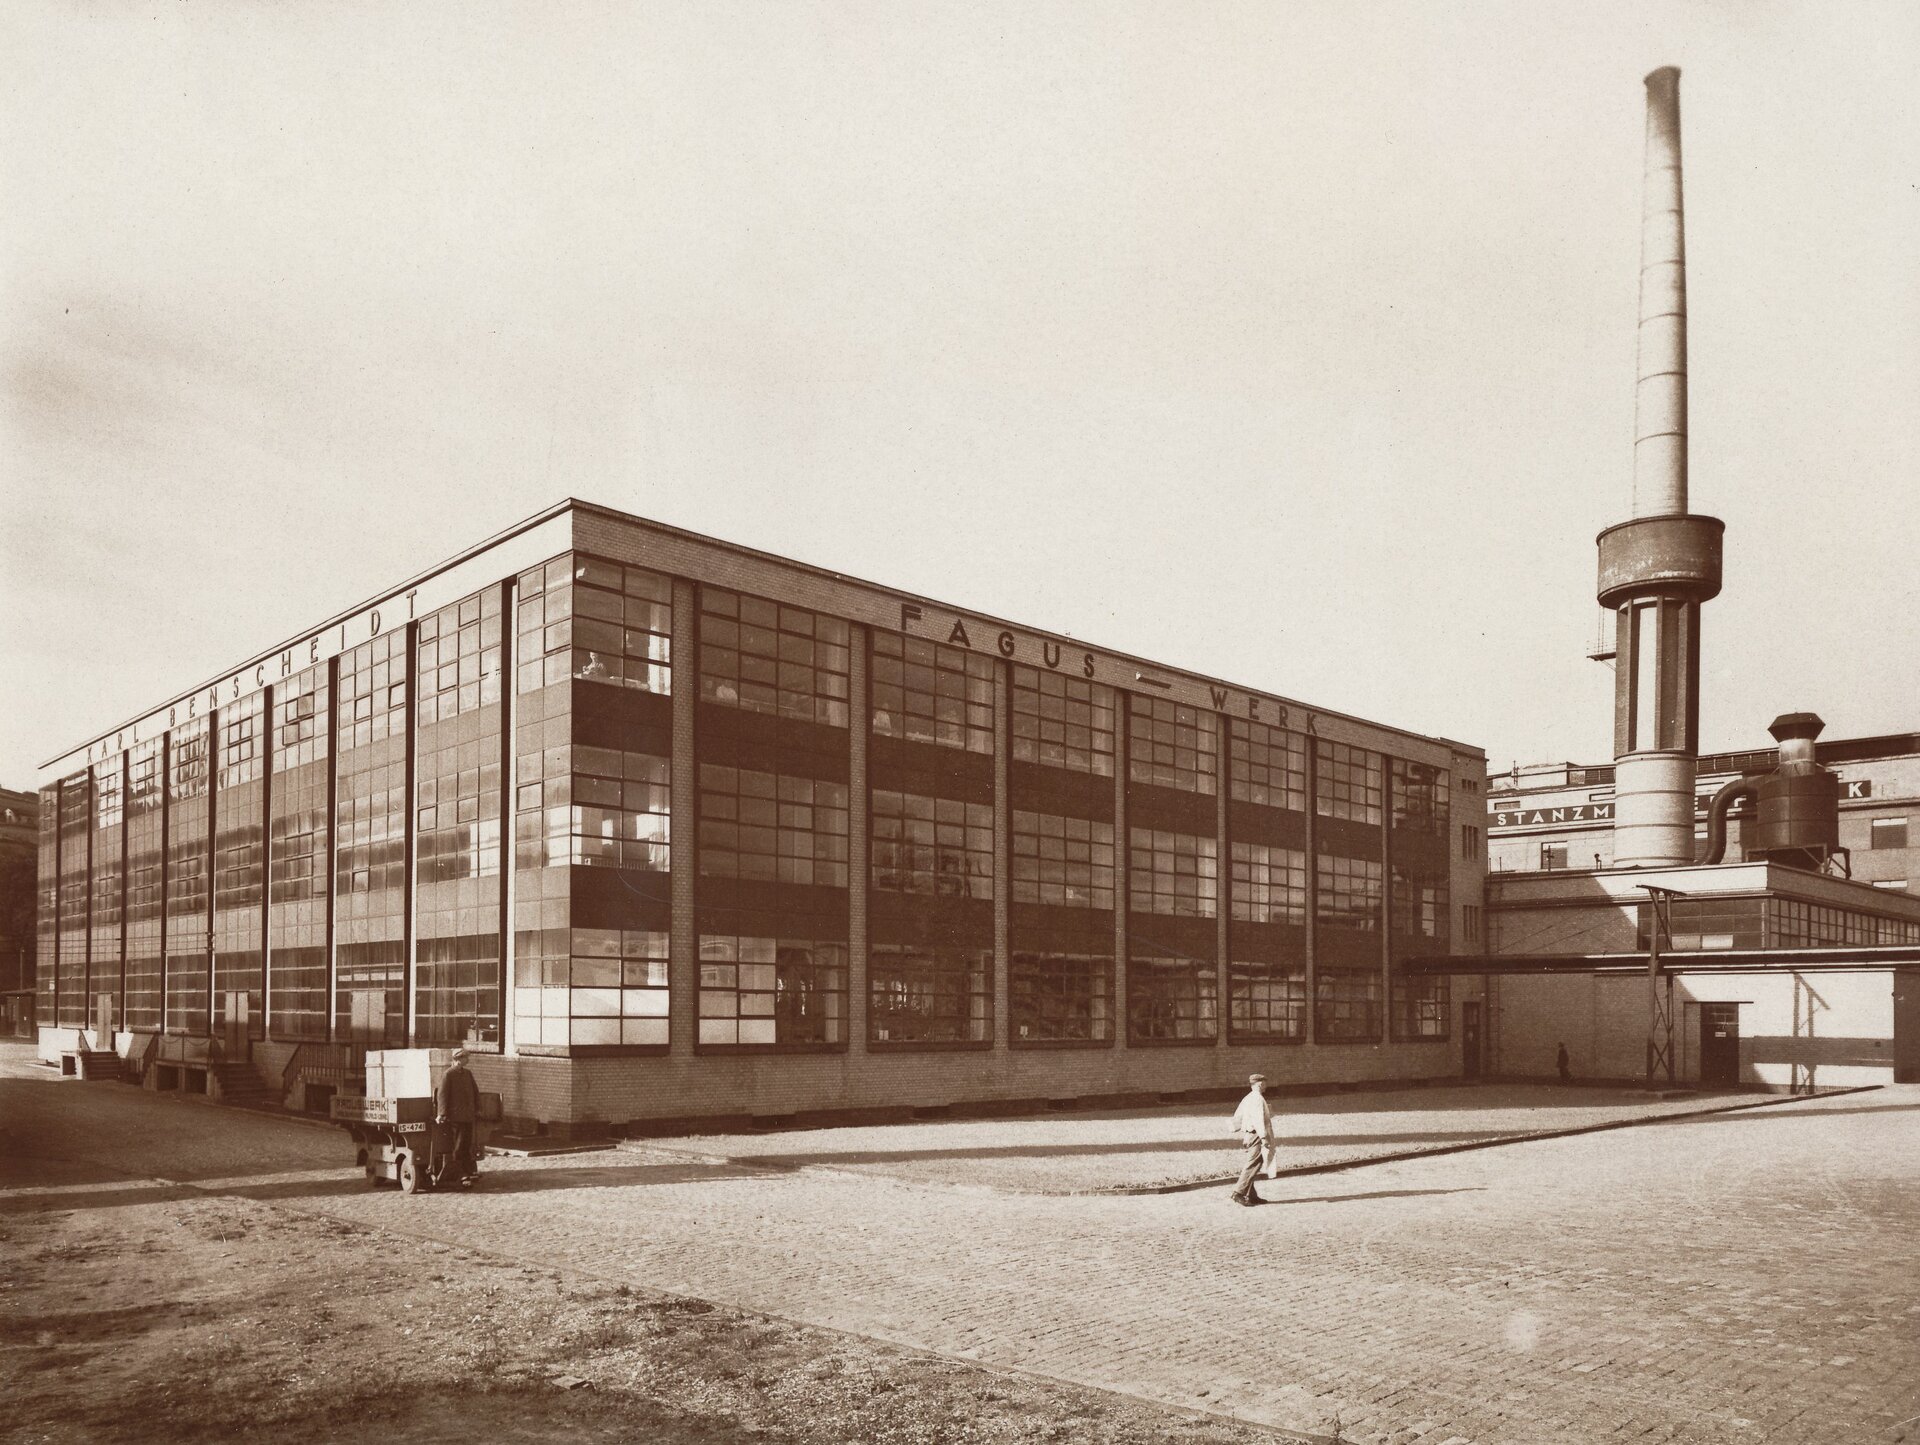 Ilustracja przedstawia czarno białą fotografię Waltera Gropius i Adolfa Meyer „Fabryka Fagus”. Na pierwszym planie widać dwie idące osoby, w tle znajduje się budynek fabryki z przeszklonymi ścianami. Po prawej stronie znajduje się wysoki komin i inne budynki.